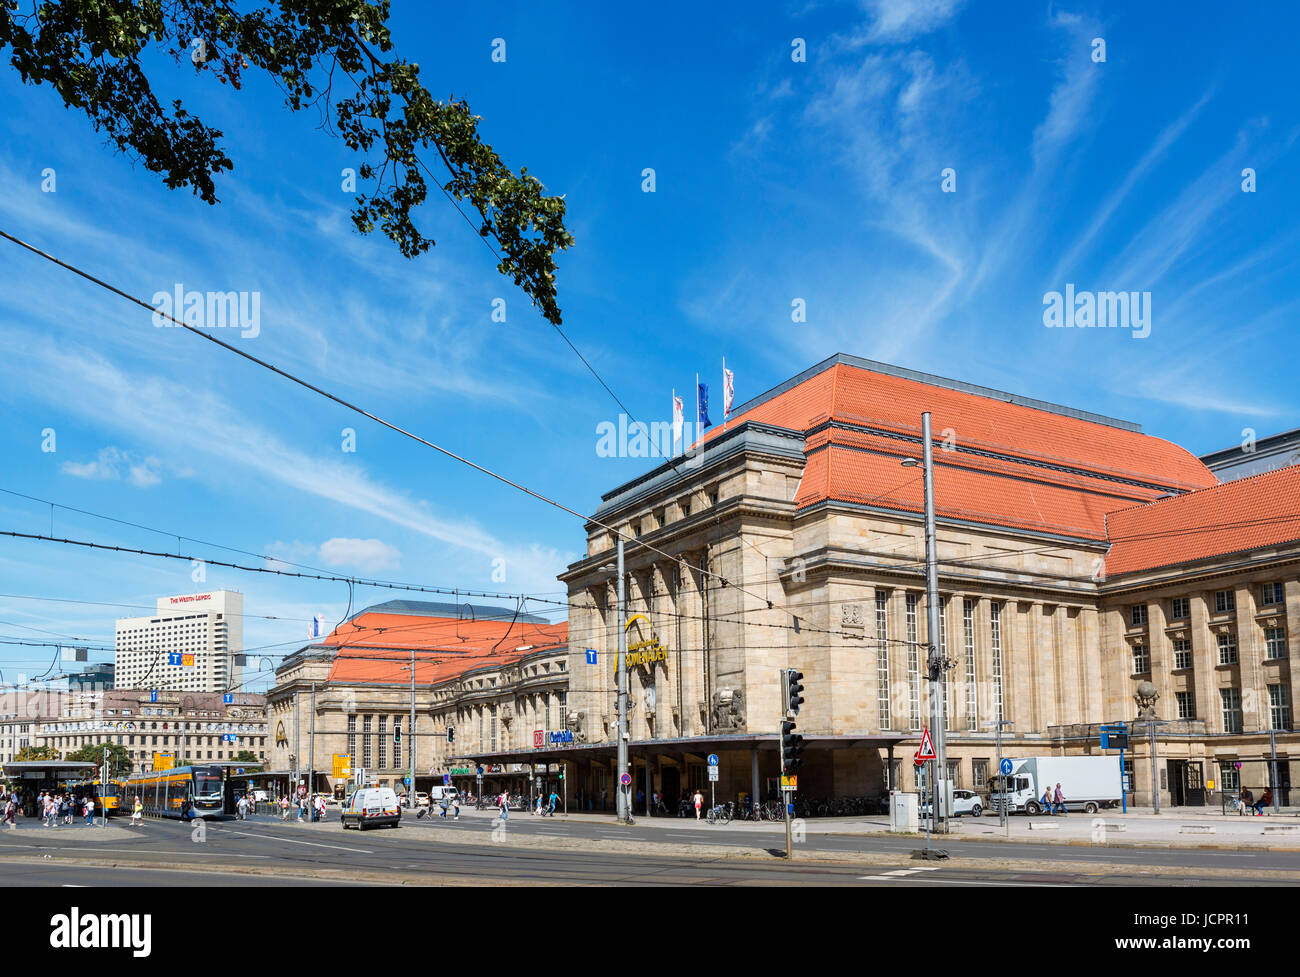 Hauptbahnhof, l'une des plus grandes gares en Europe, Leipzig, Saxe, Allemagne Banque D'Images